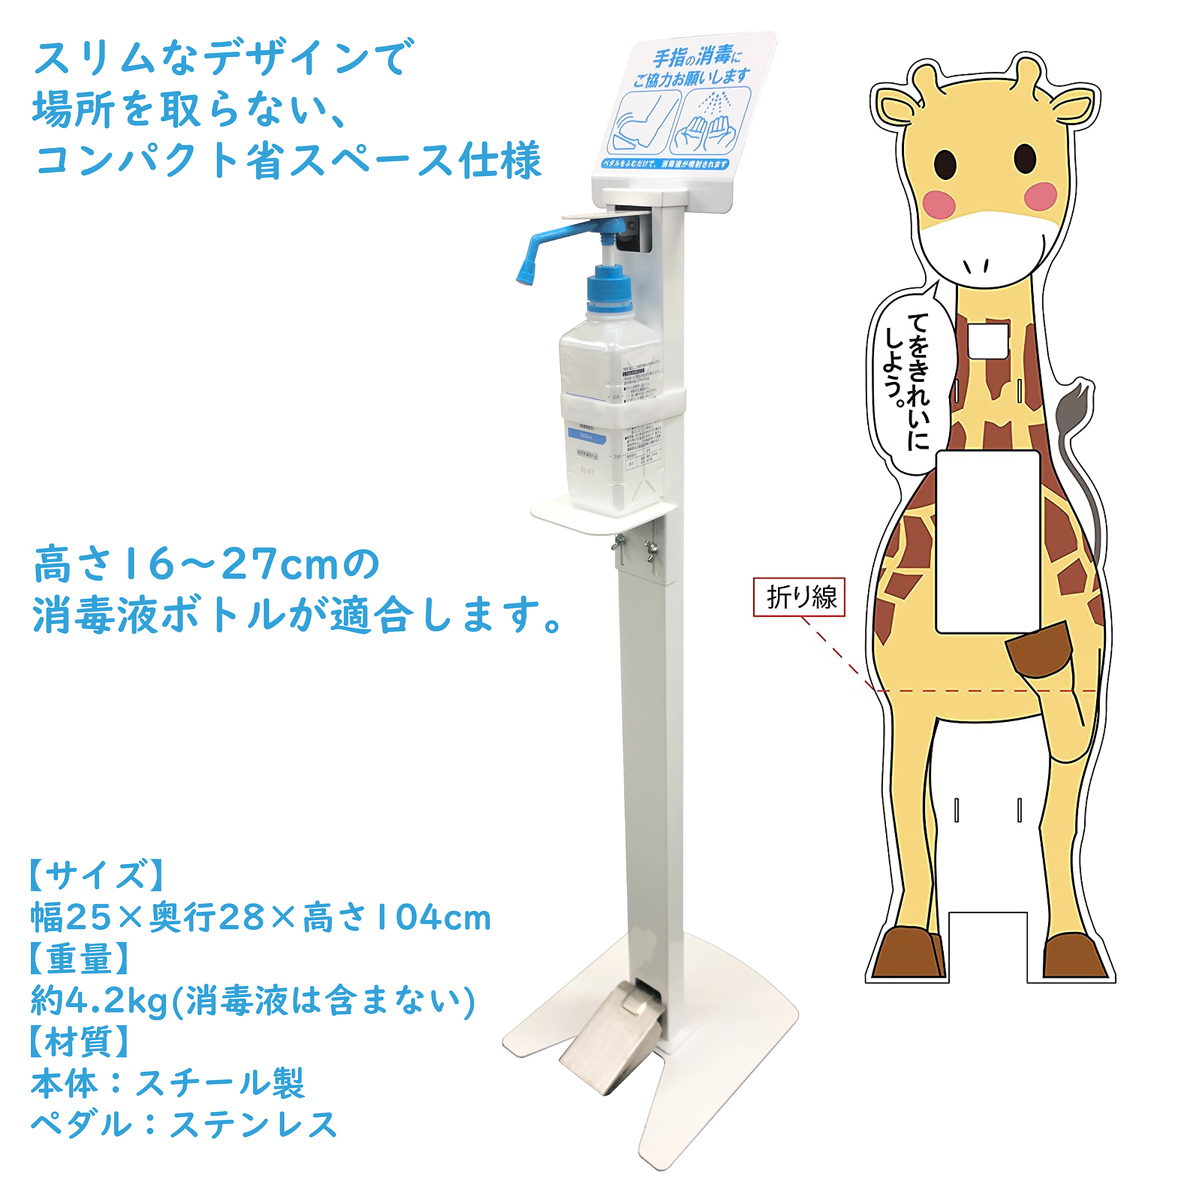 可愛い 消毒液 スタンド キリン 足踏み式 日本製 アルコール スタンド 動物キャラクター コロナ対策 Rvcconst Com